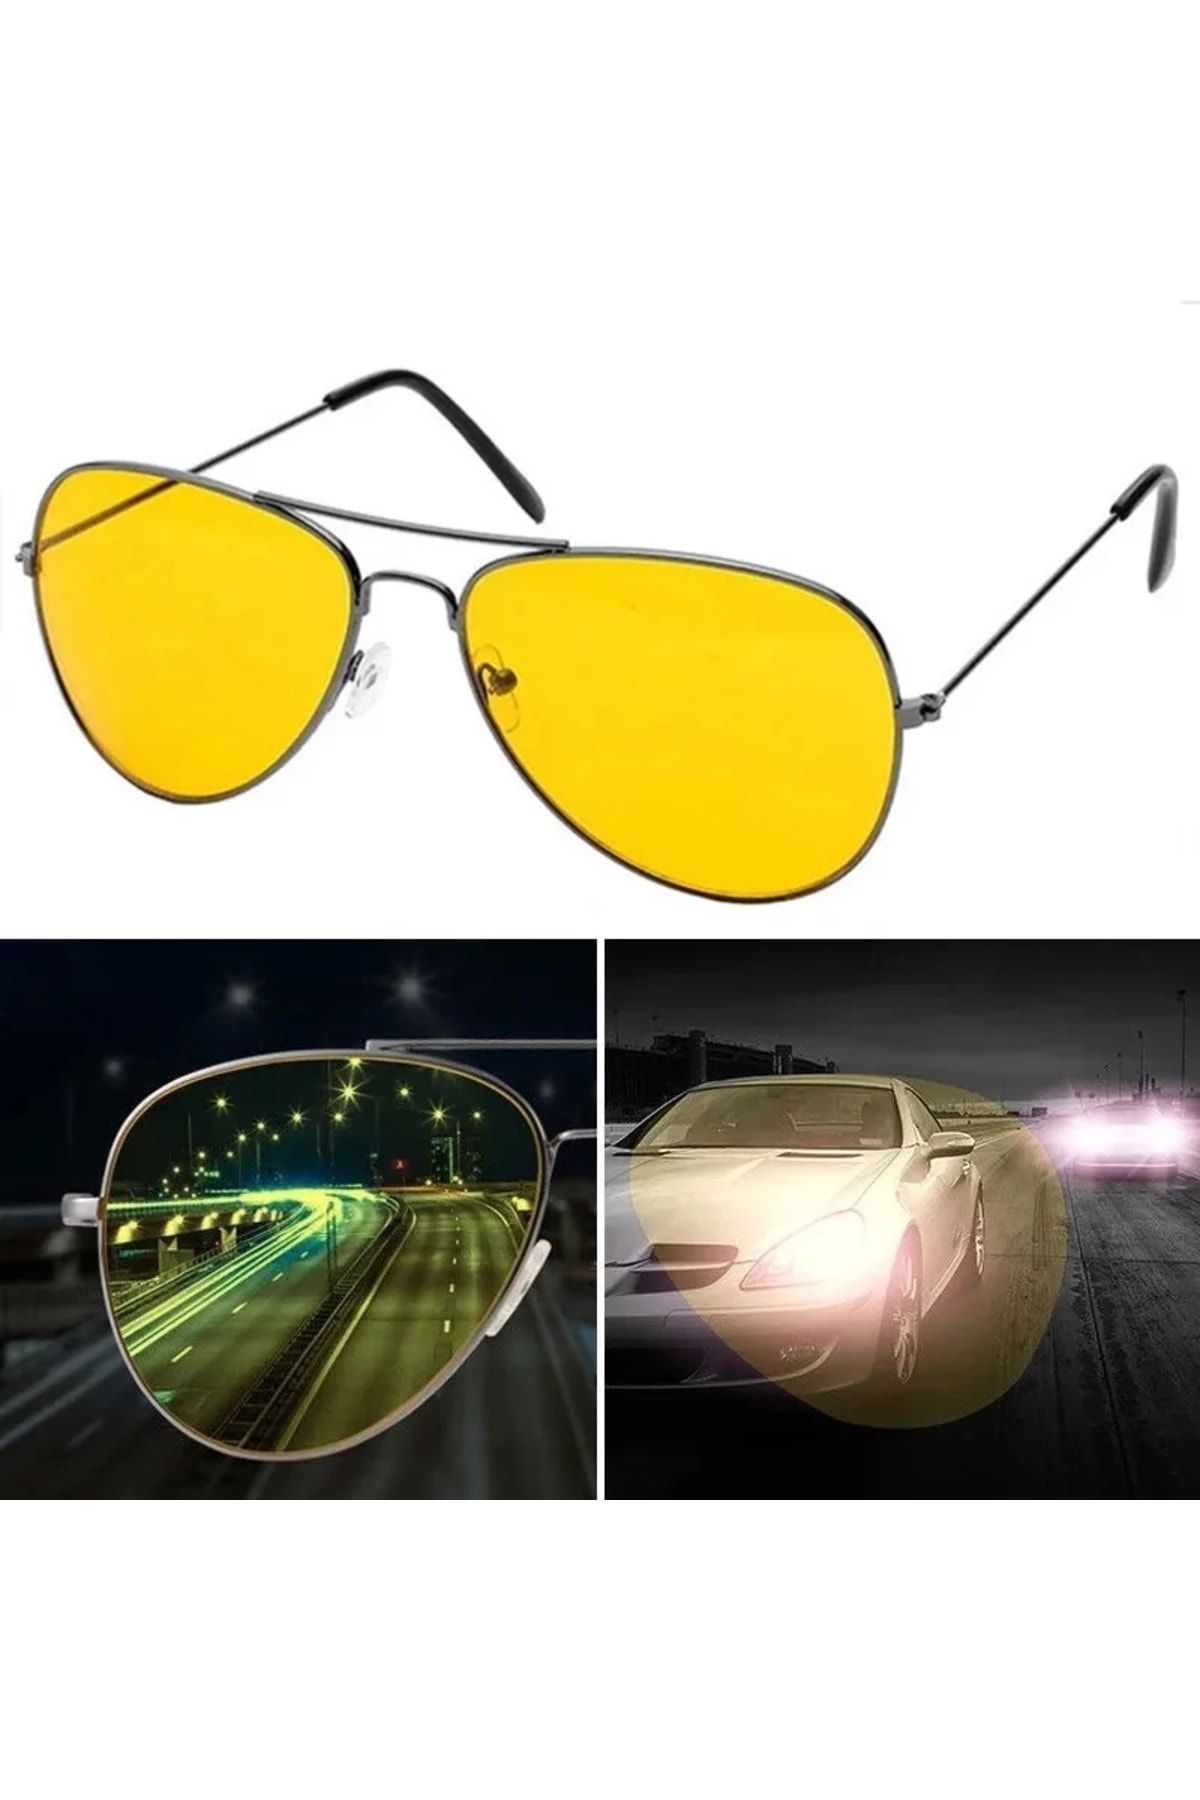 AVİPOLES Gece görüş sürüş gözlüğü araç sürüş gözlüğü unisex Yeni sezon Yeni model